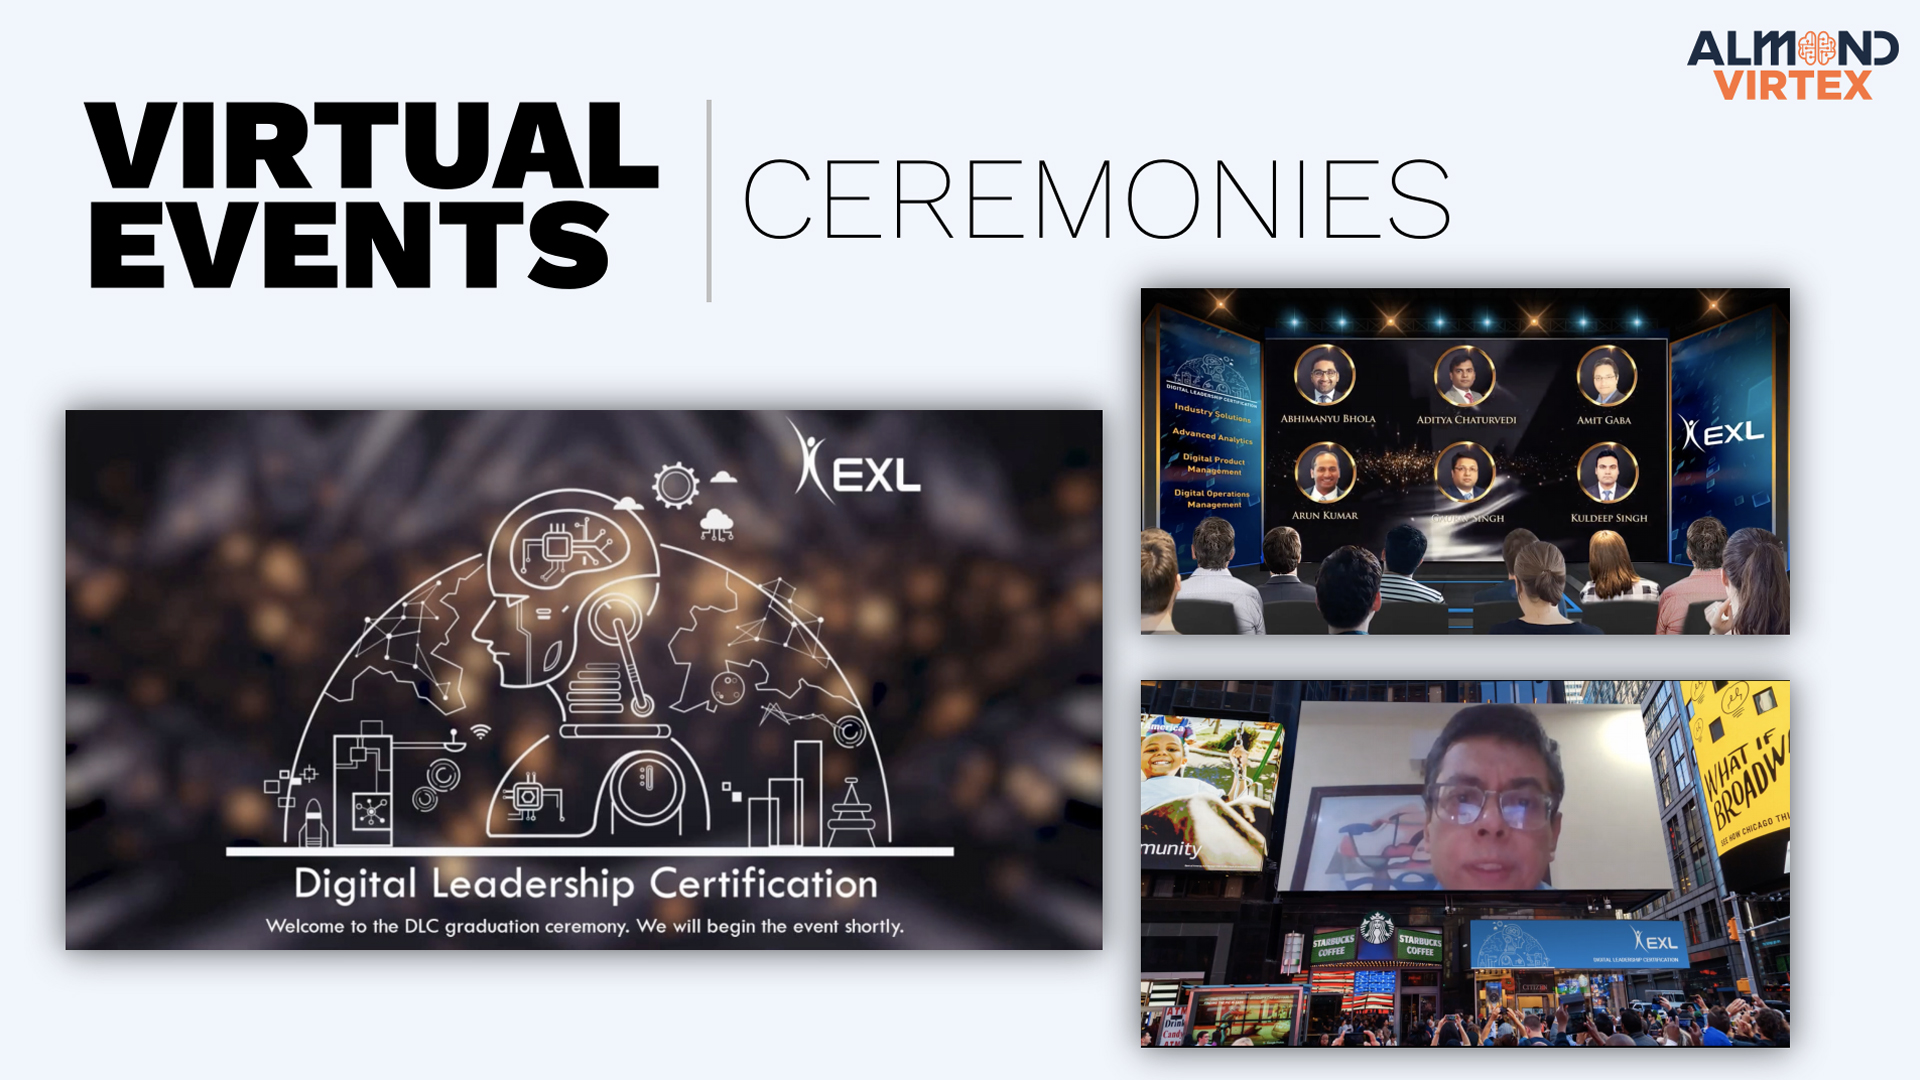 Almond Virtex Virtual Event Platform - Ceremonies